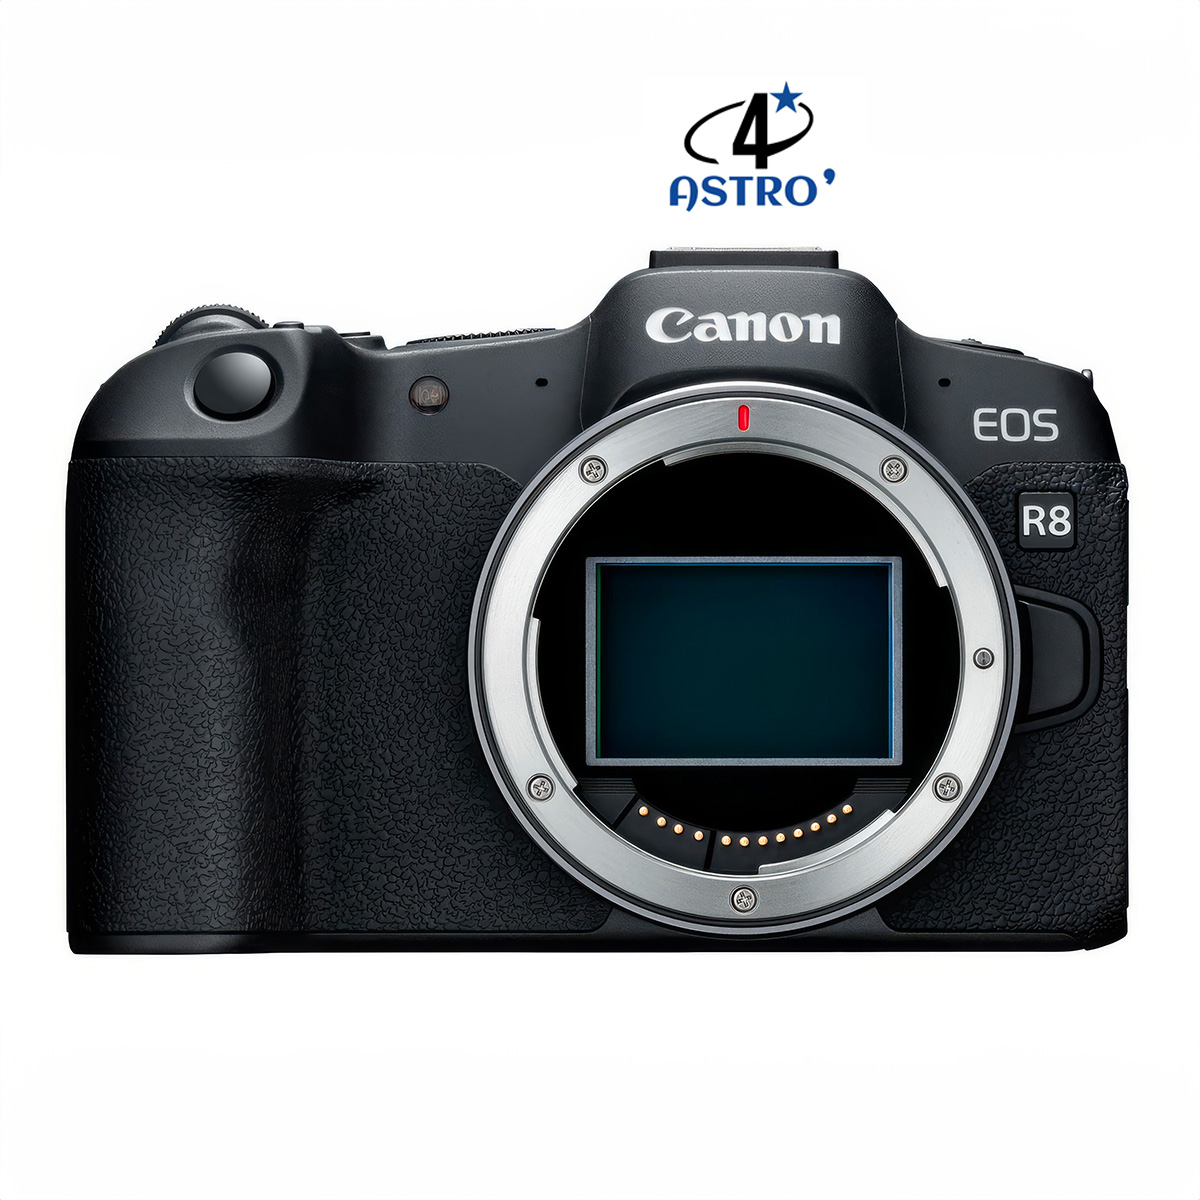 Hybride Canon EOS R8 neuf défiltré + refiltré 4'Astro